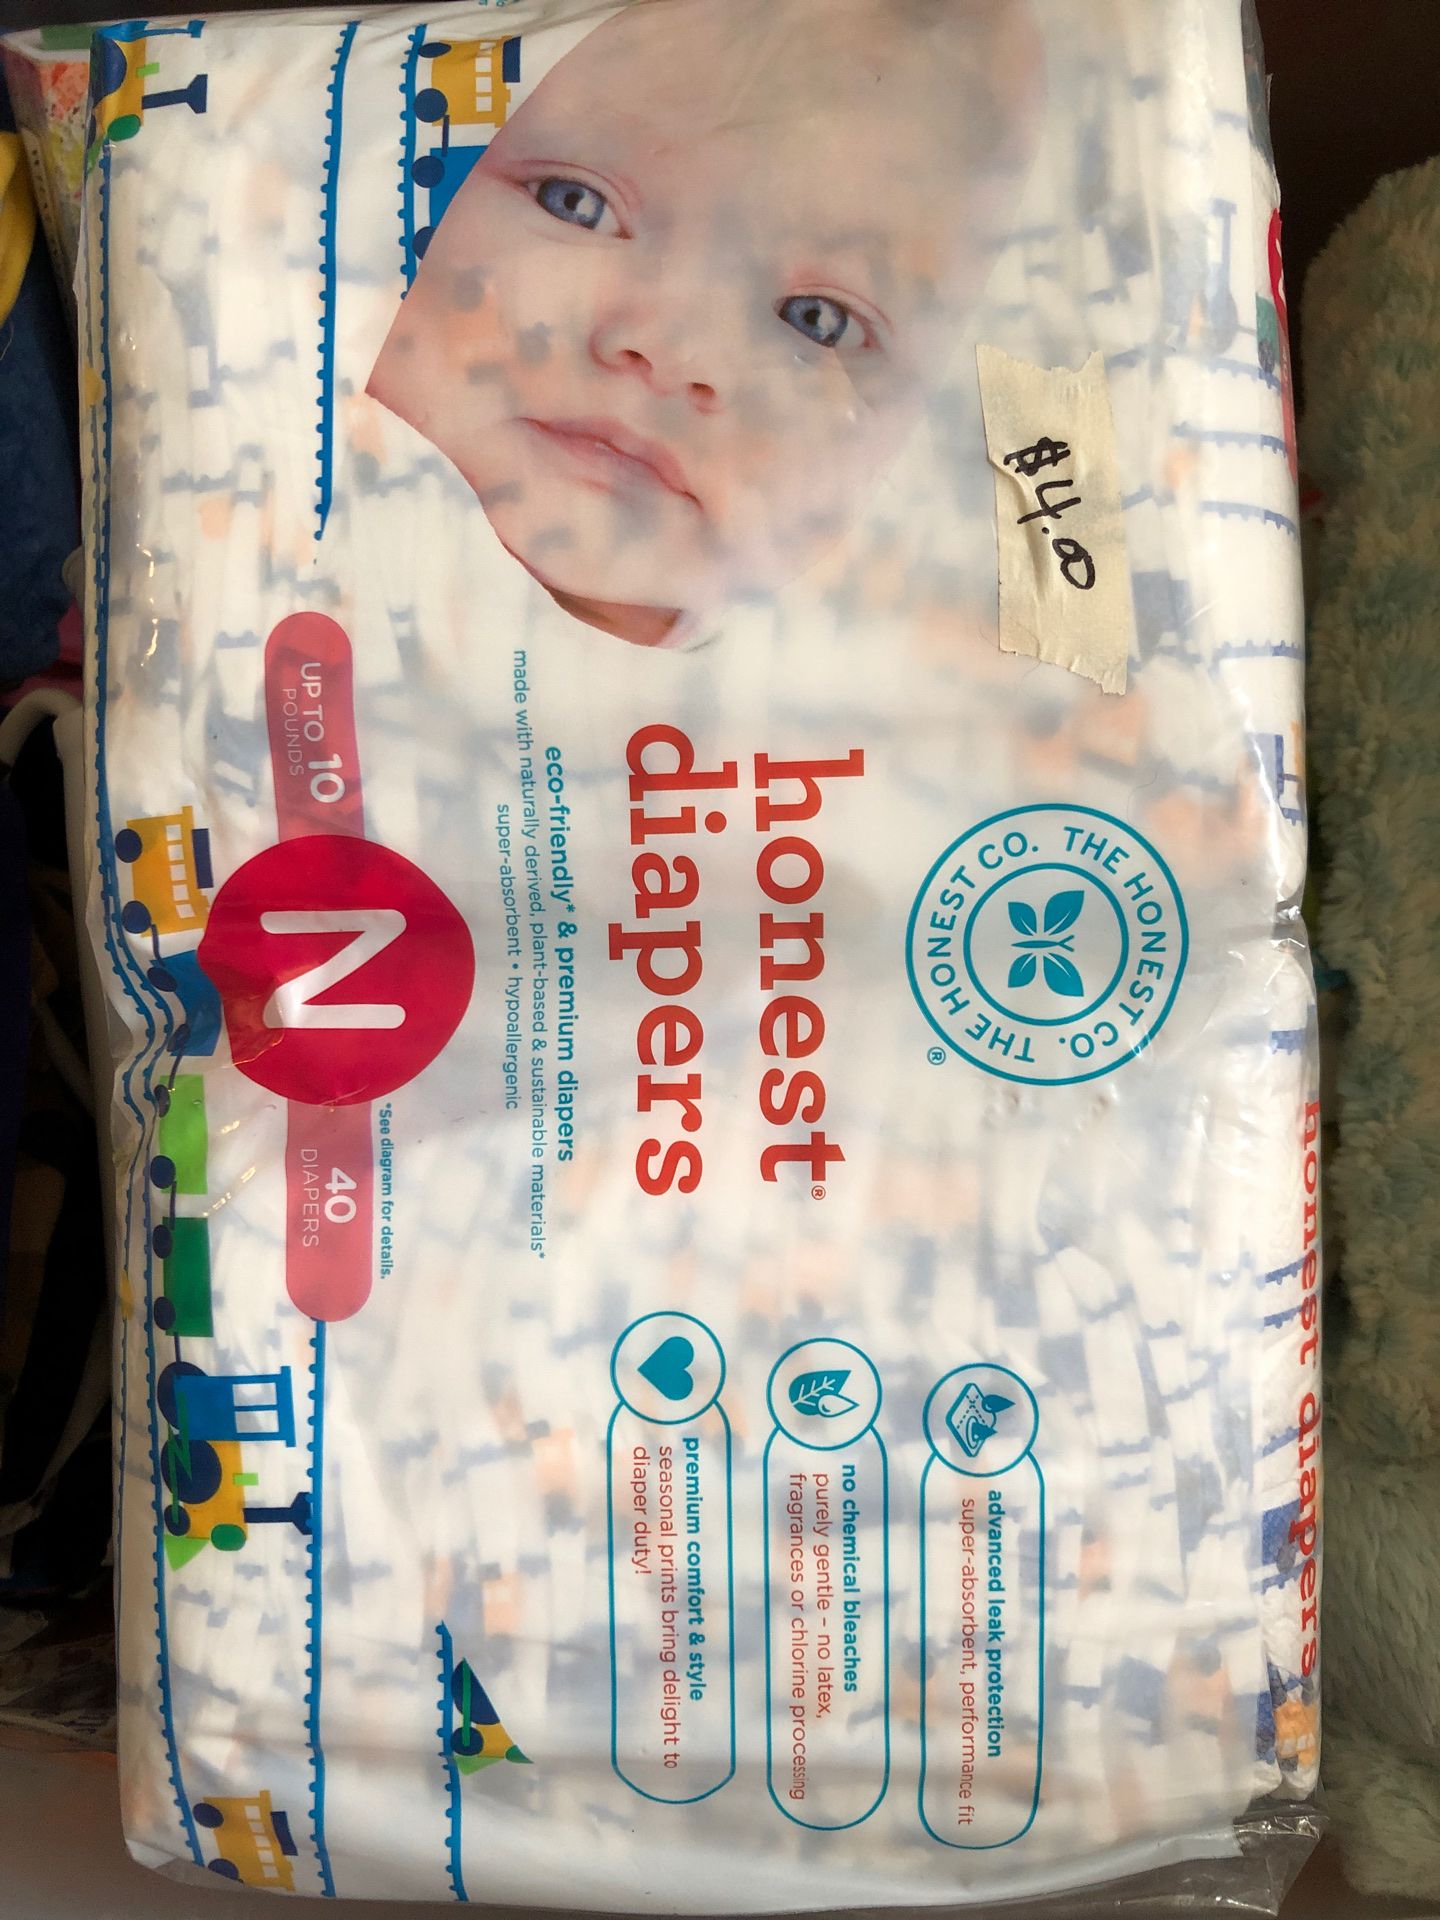 Honest newborn diapers